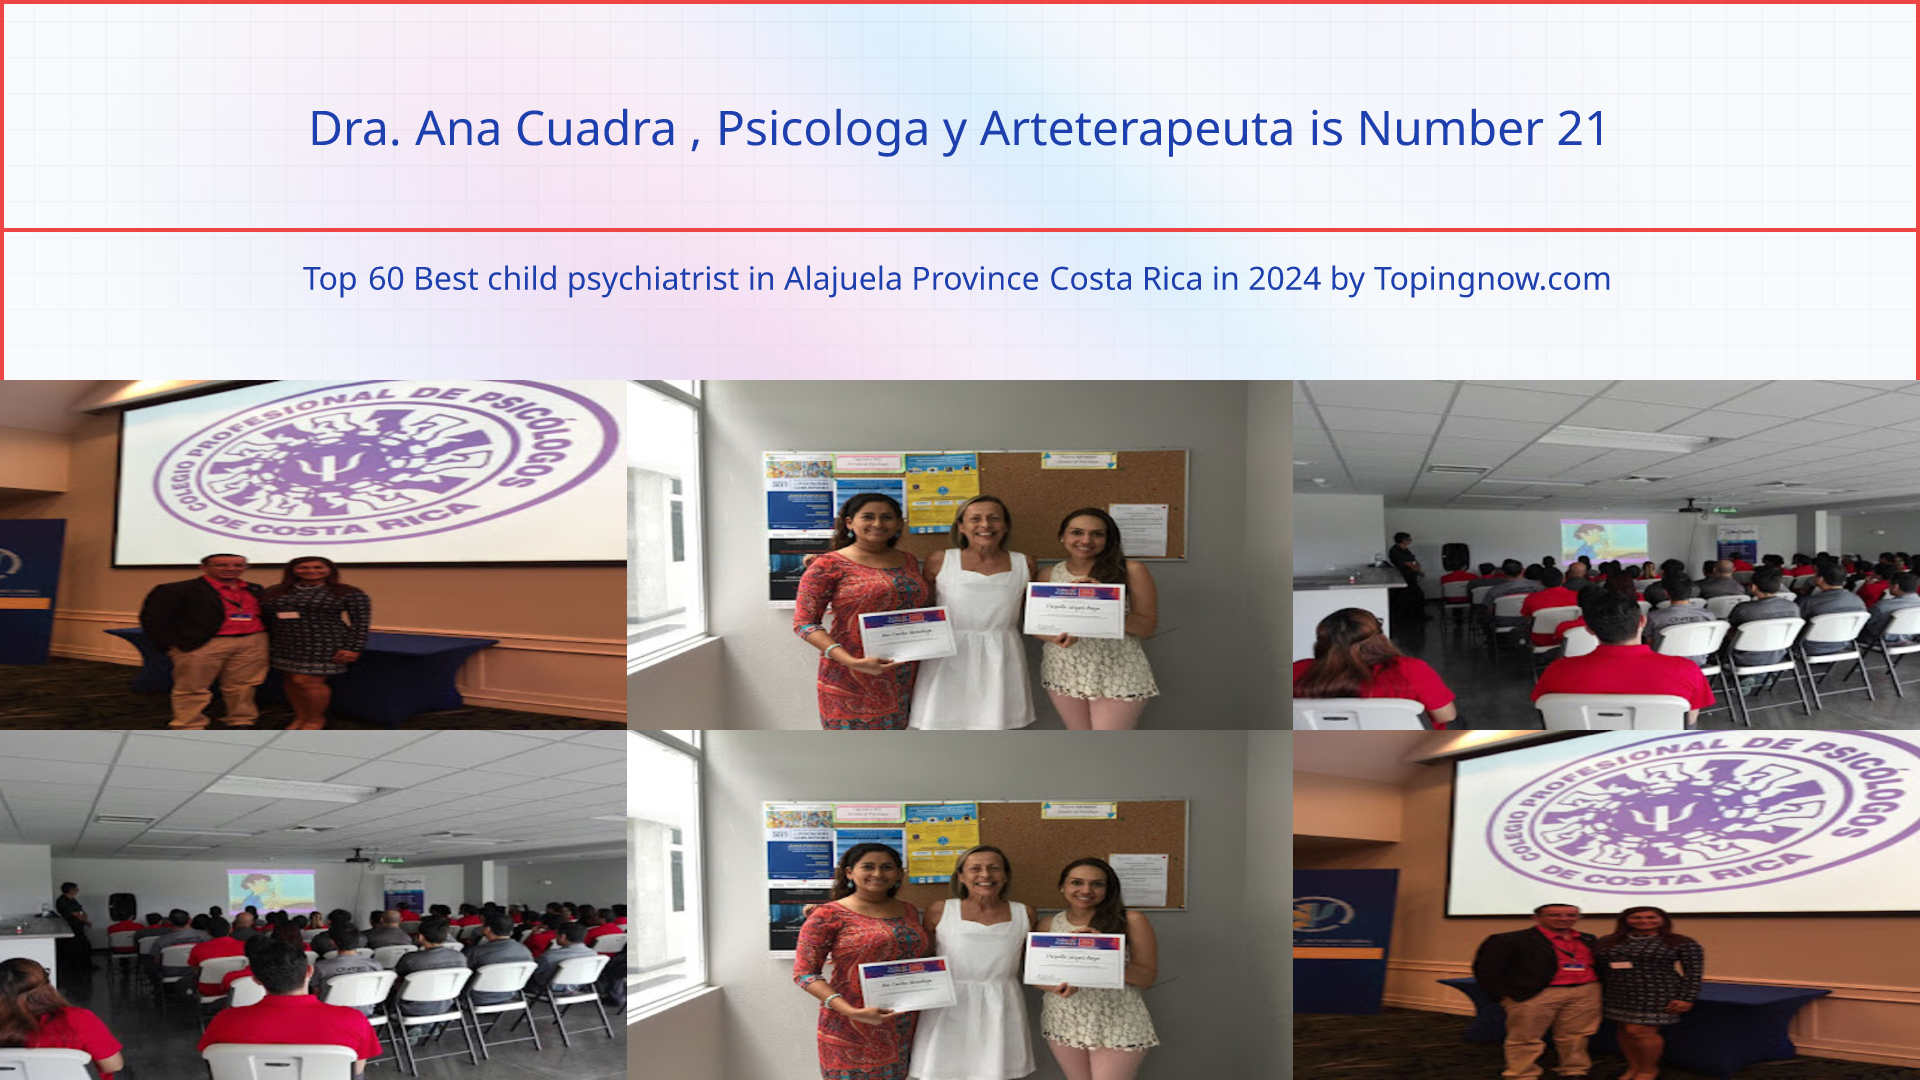 Dra. Ana Cuadra , Psicologa y Arteterapeuta: Top 60 Best child psychiatrist in Alajuela Province Costa Rica in 2024